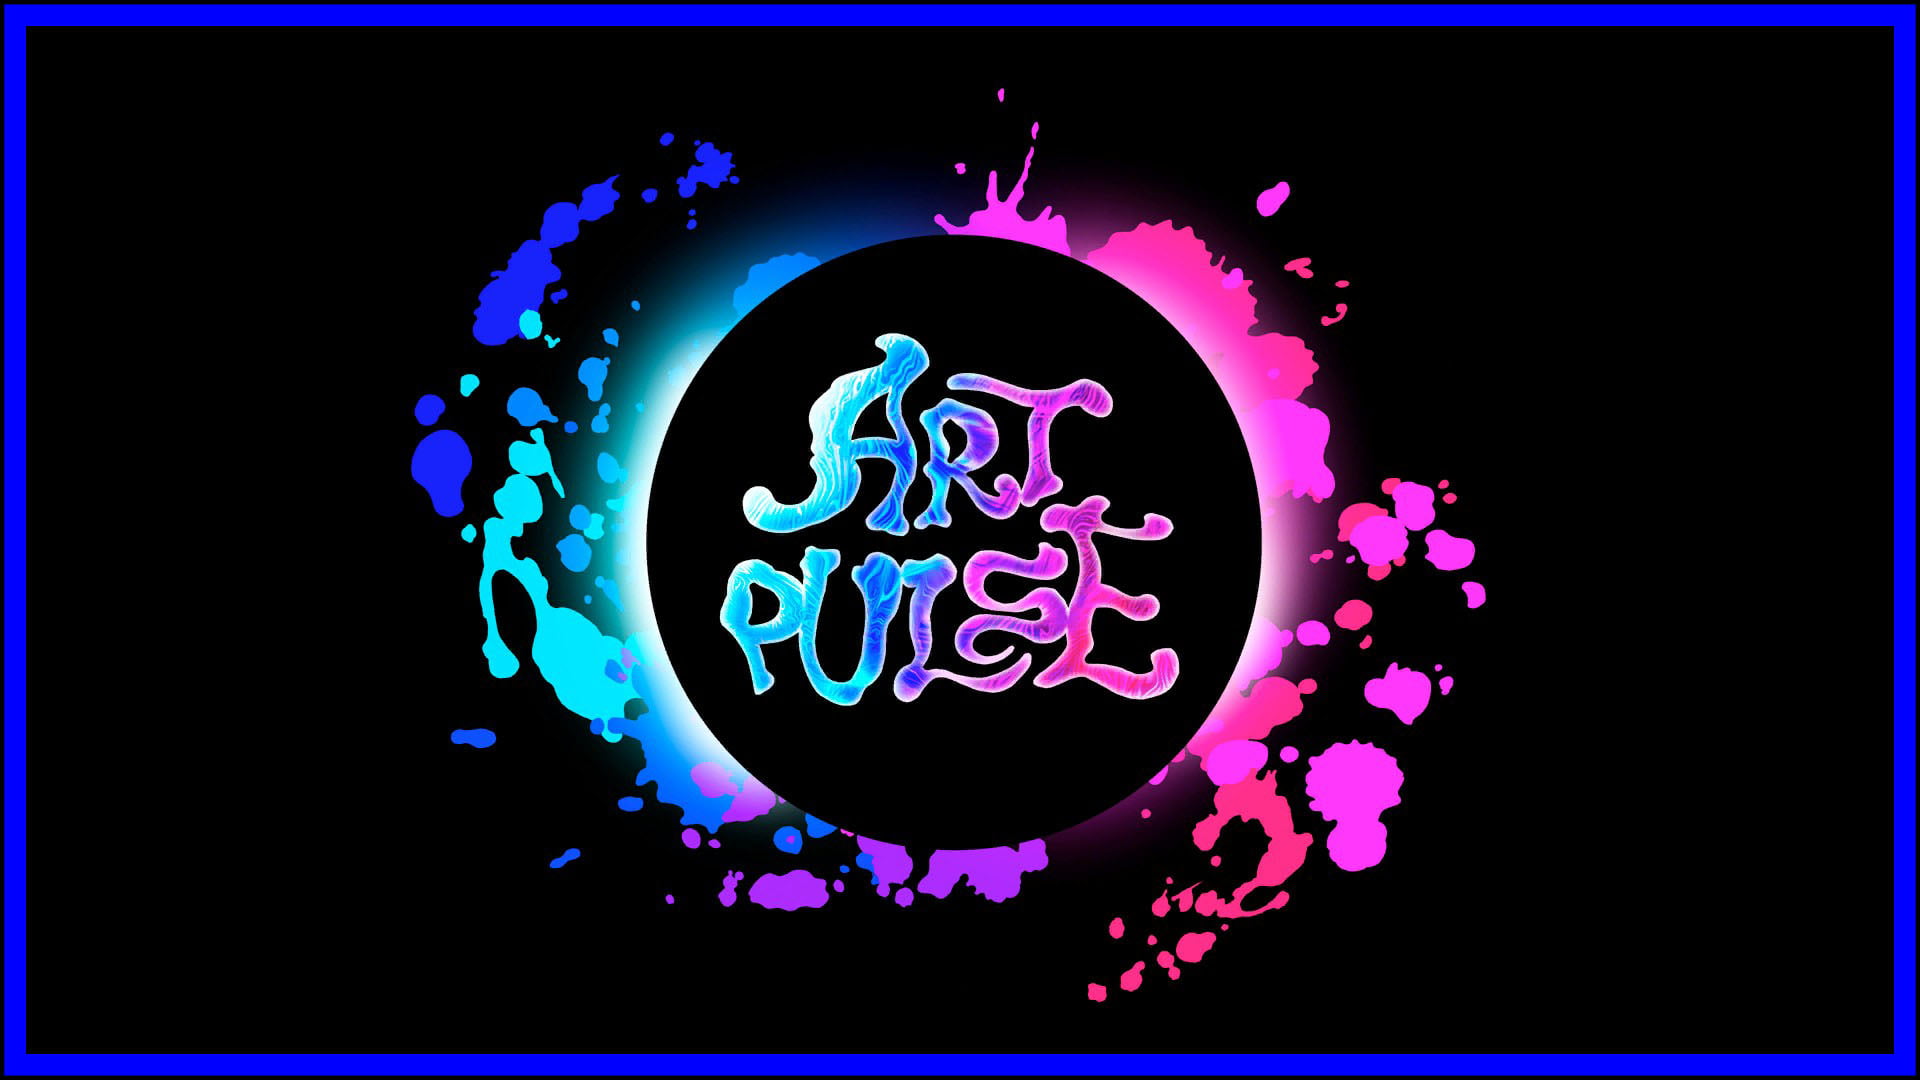 Art Pulse Fi3